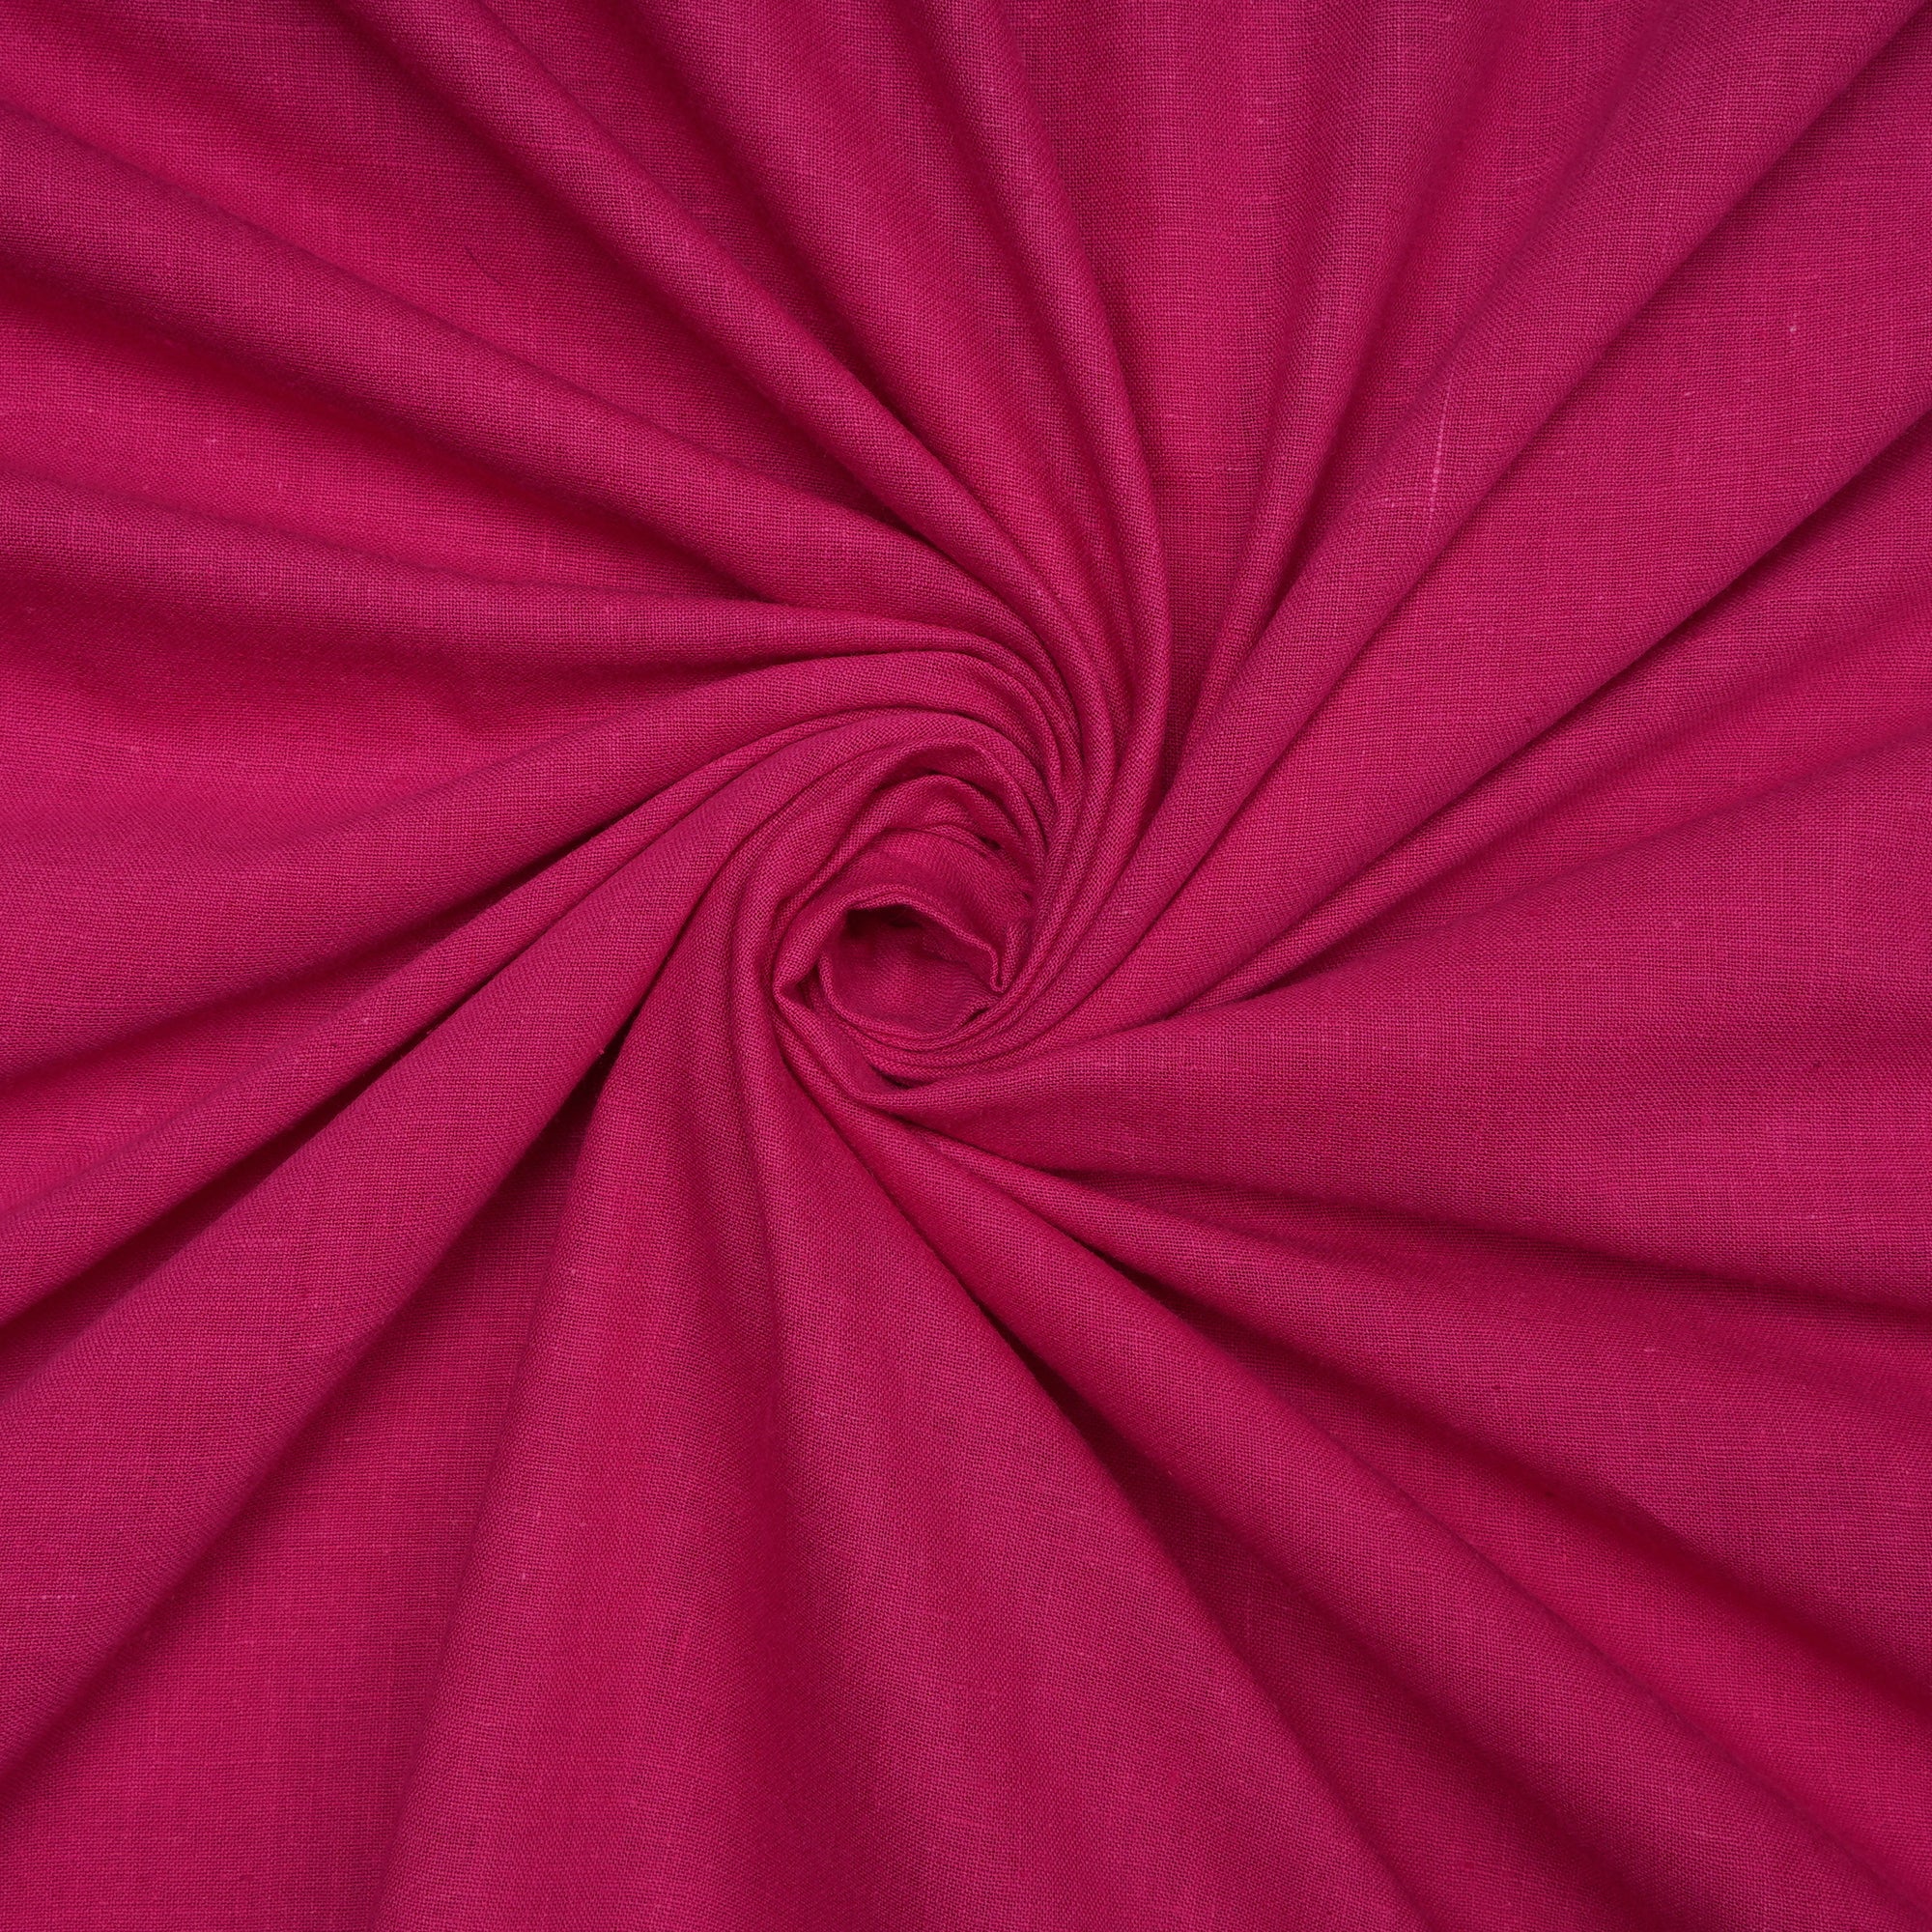 Dark Pink Handspun Handwoven Muslin Cotton FabricCream Handwoven Muslin Cotton Fabric